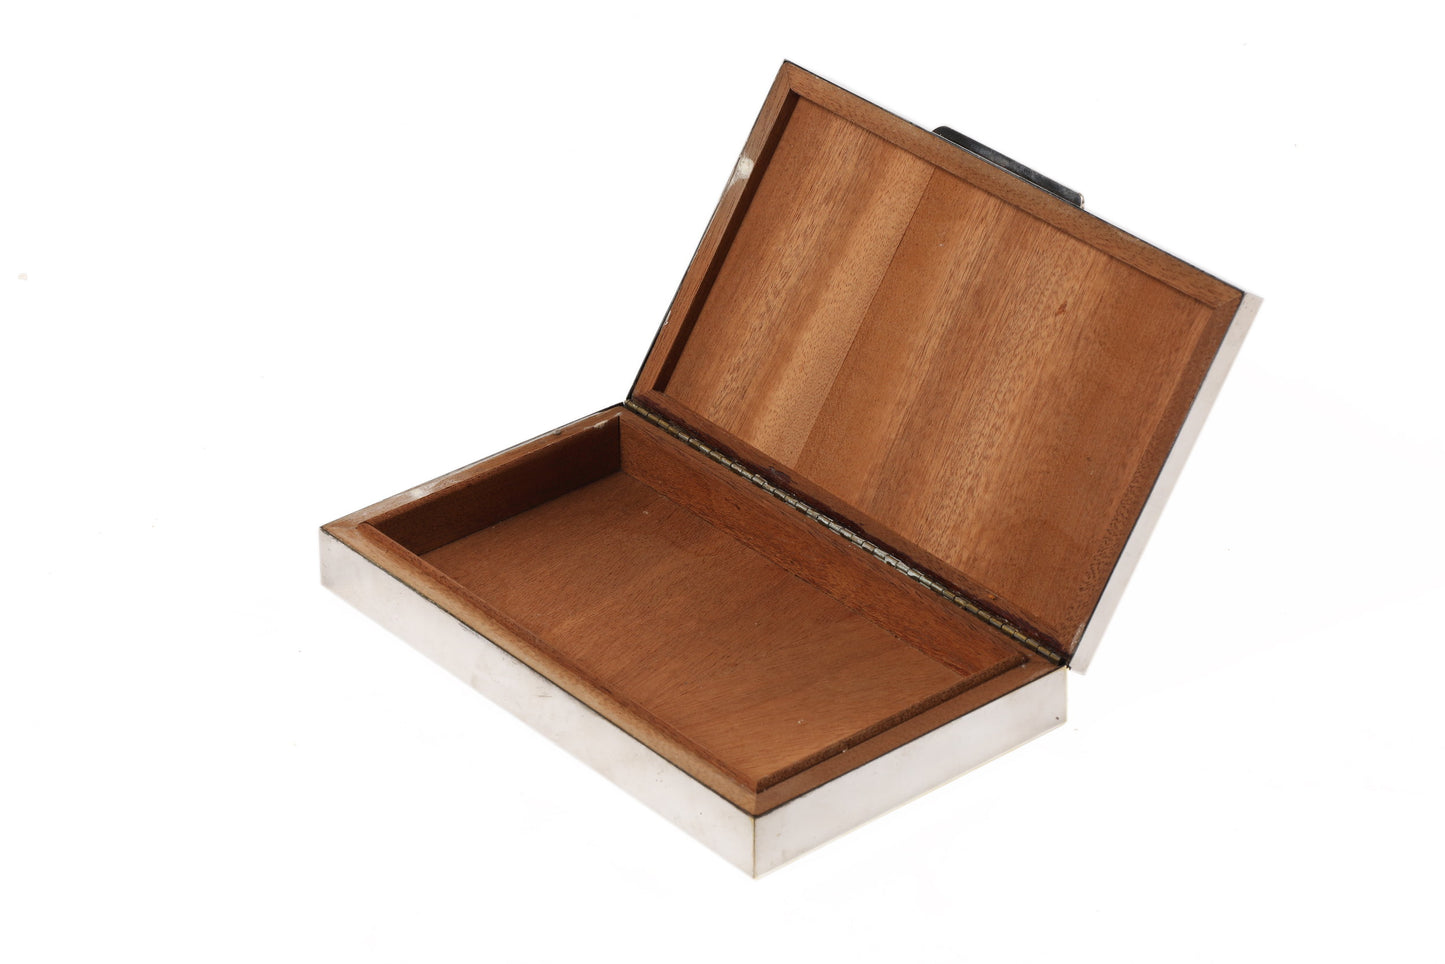 Pierre Cardin desk box